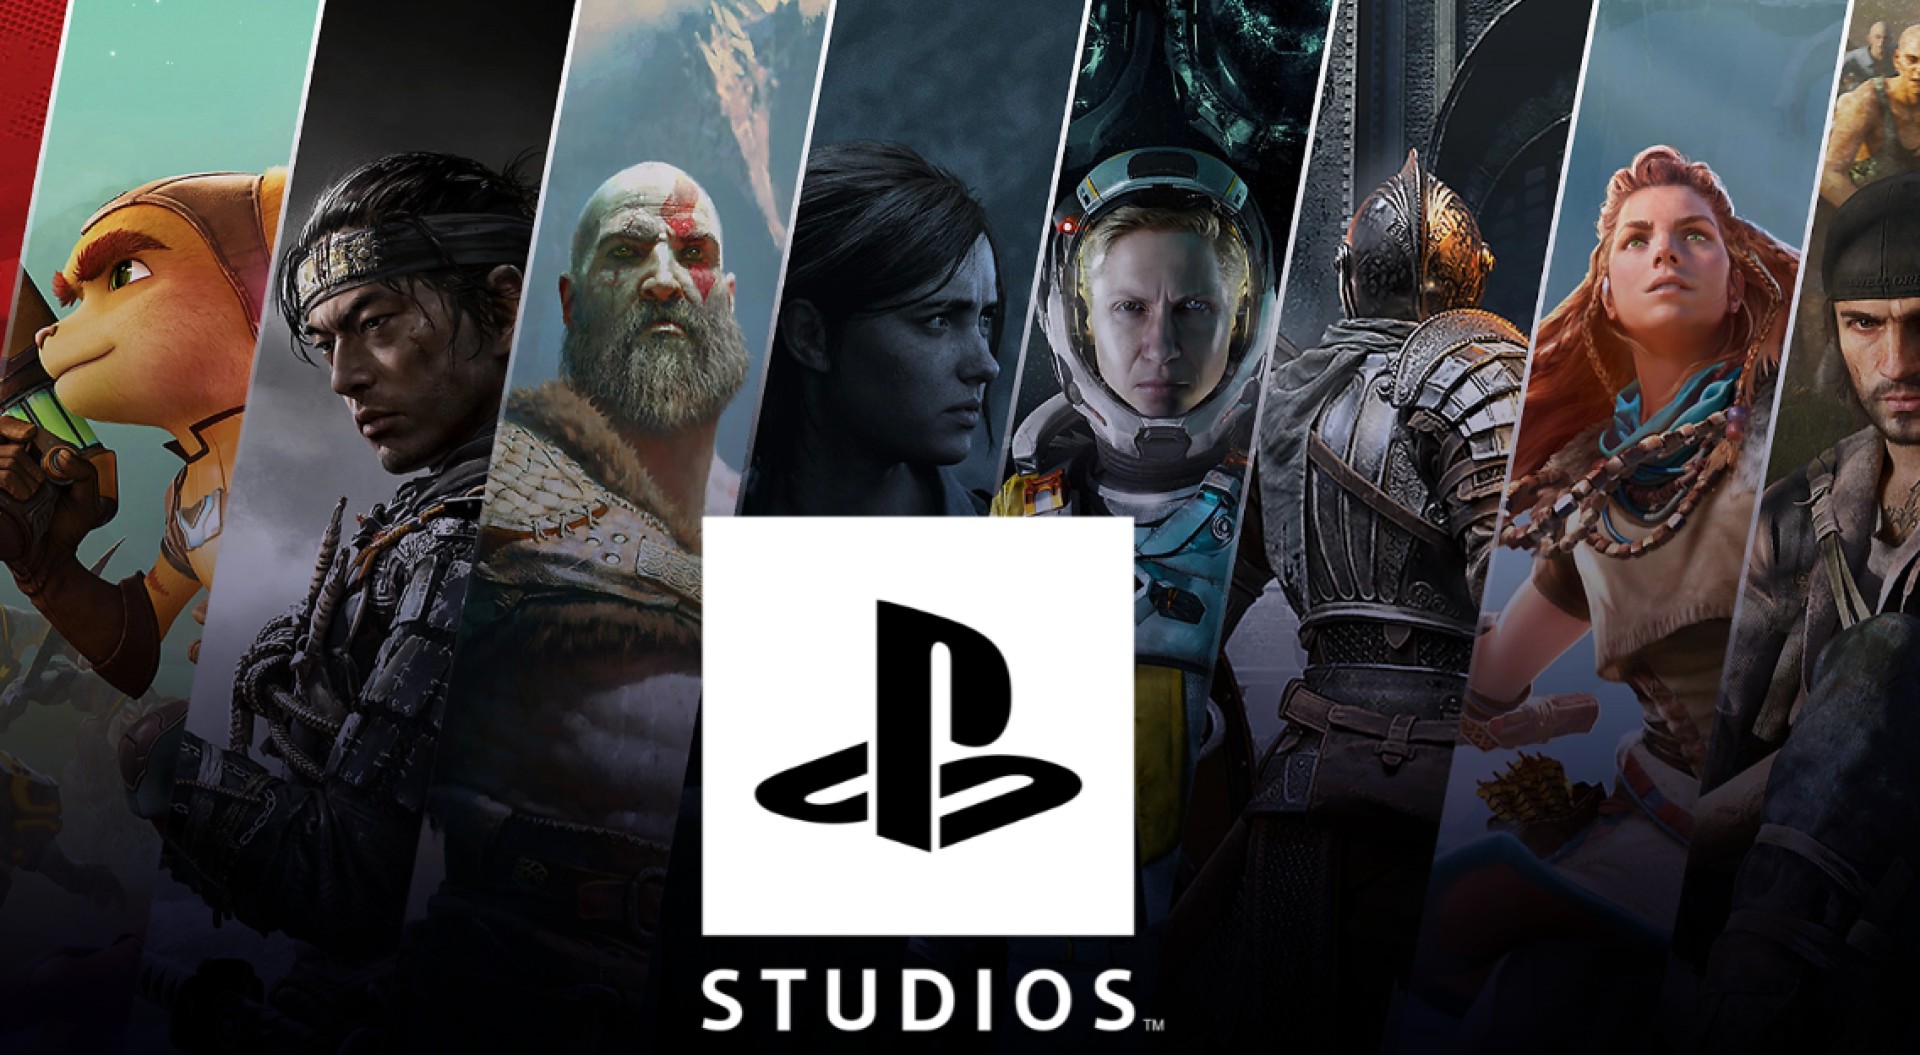 เว็บไซต์ Metacritic ยกให้ Sony เป็นผู้จัดจำหน่ายเกมยอดเยี่ยมแห่งปี ค.ศ. 2022